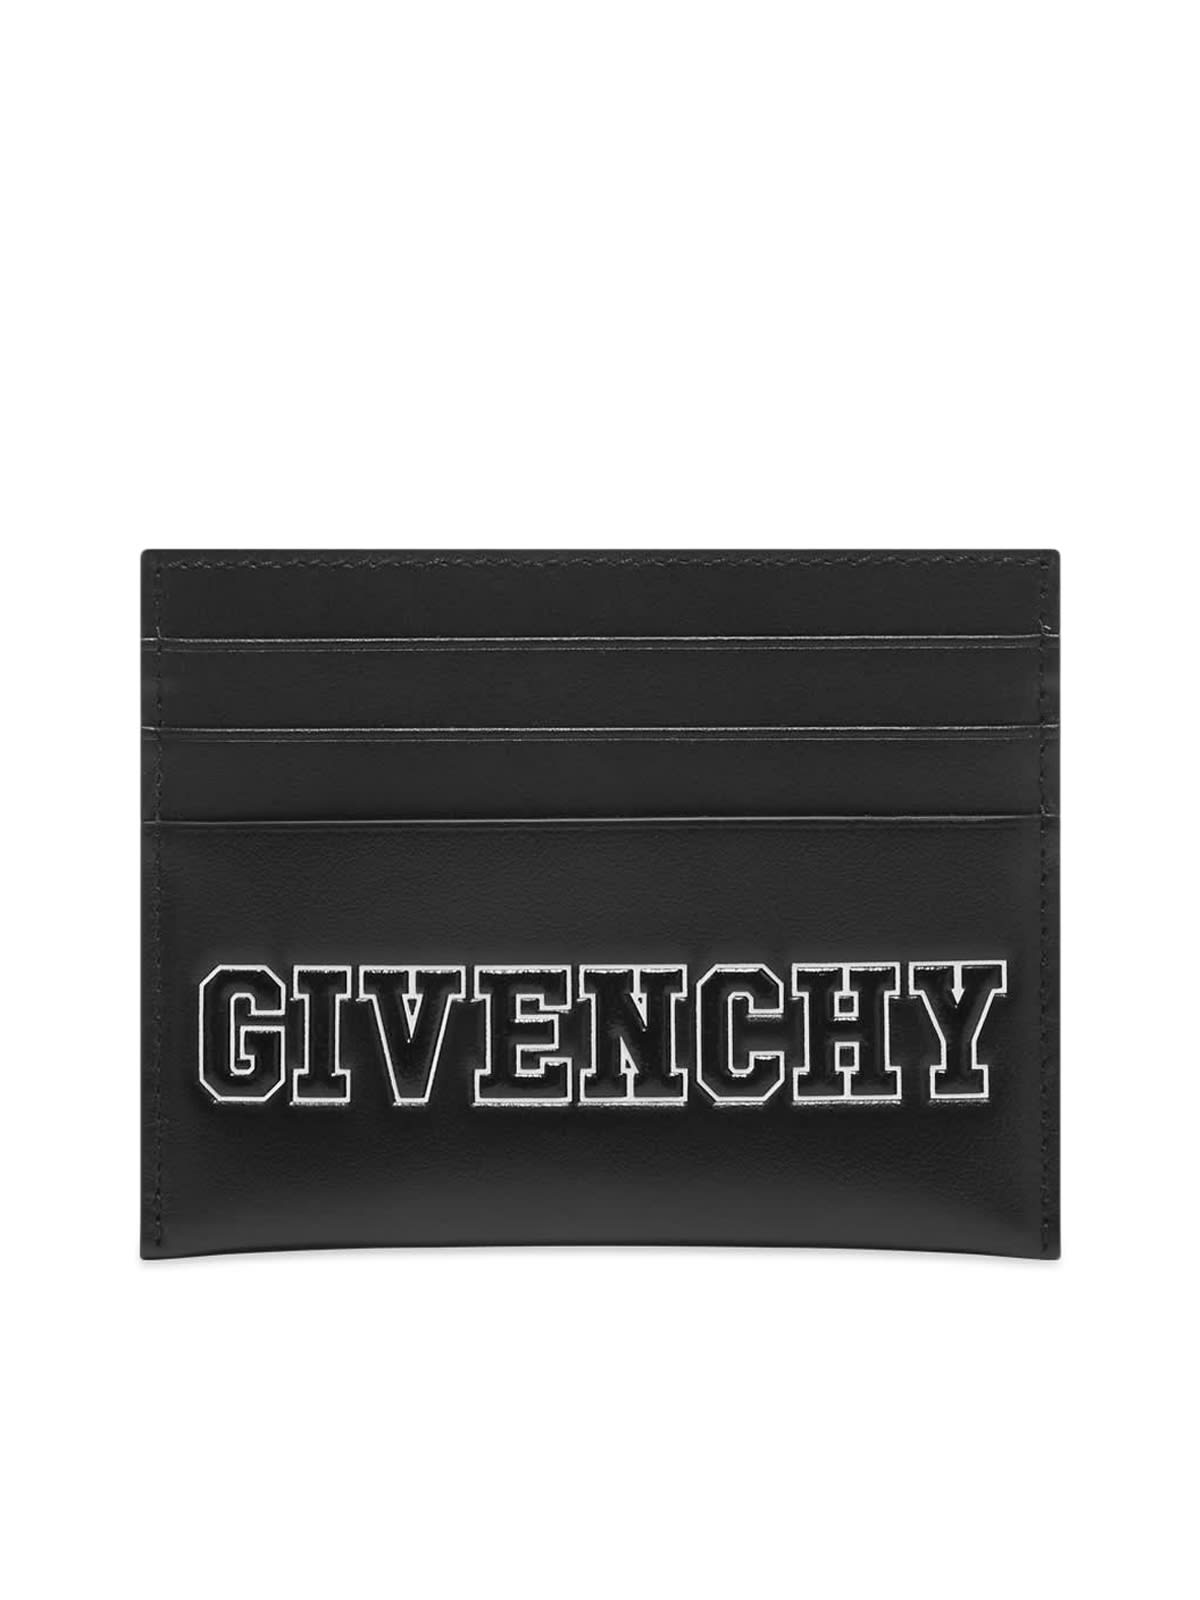 Givenchy Card Holder 2x3 Cc